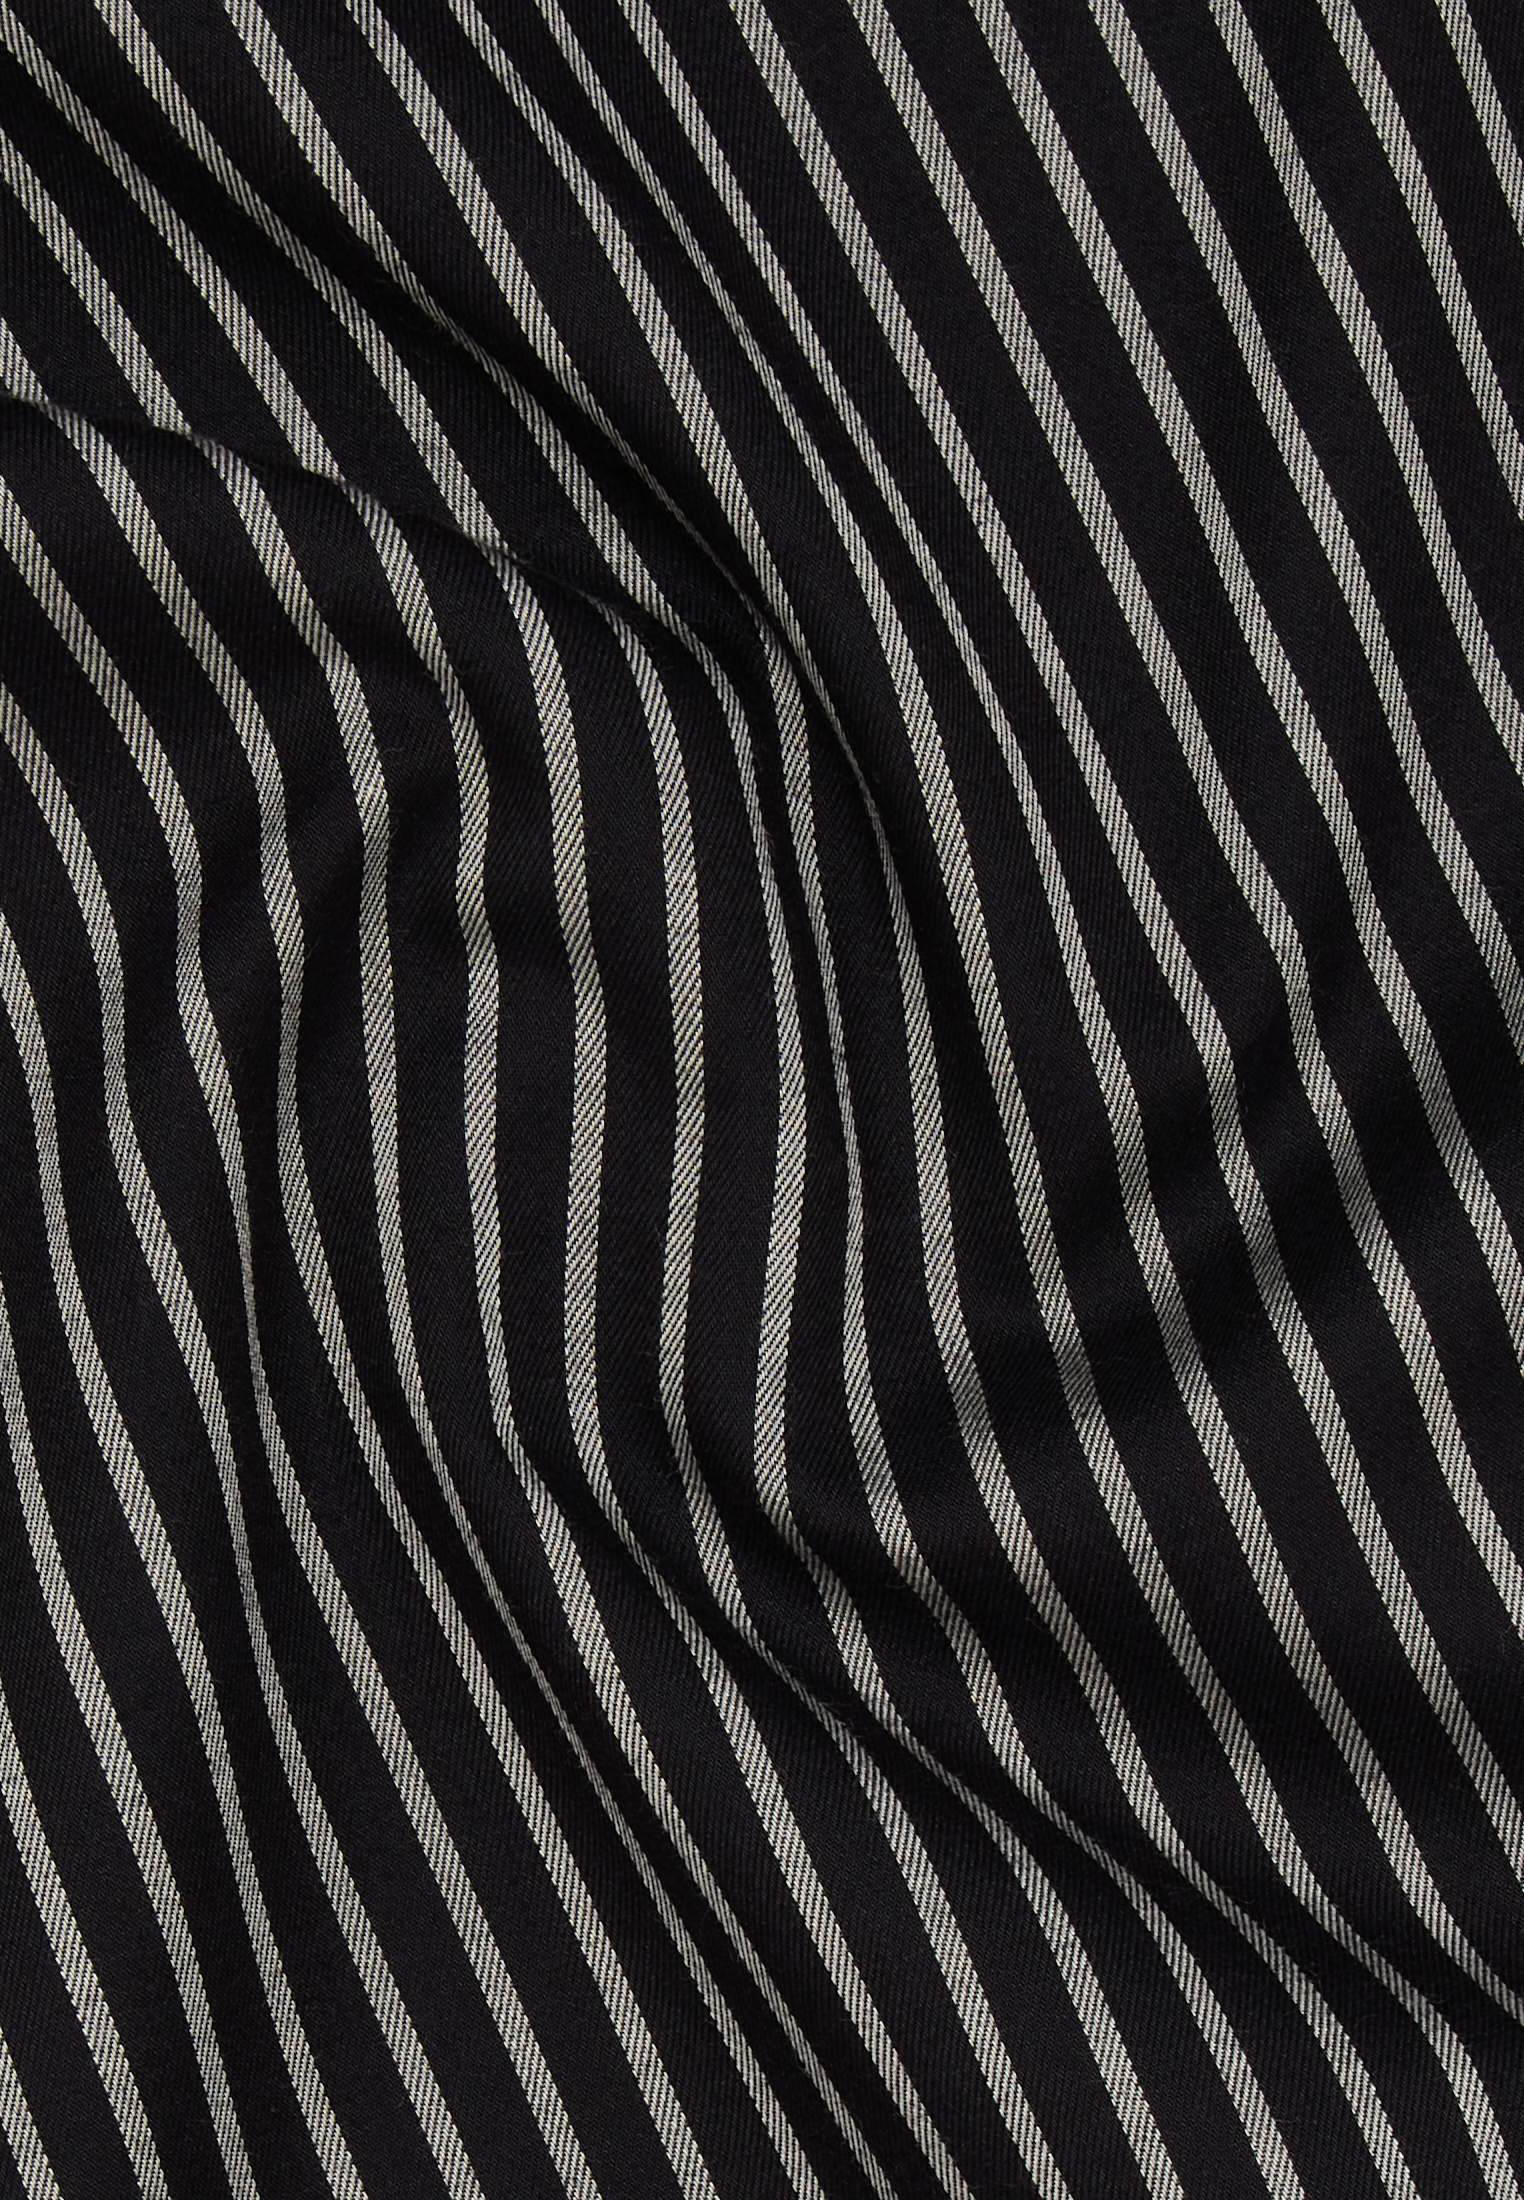 Hemdbluse in schwarz | schwarz gestreift | | 2BL04190-03-91-36-1/1 36 | Langarm